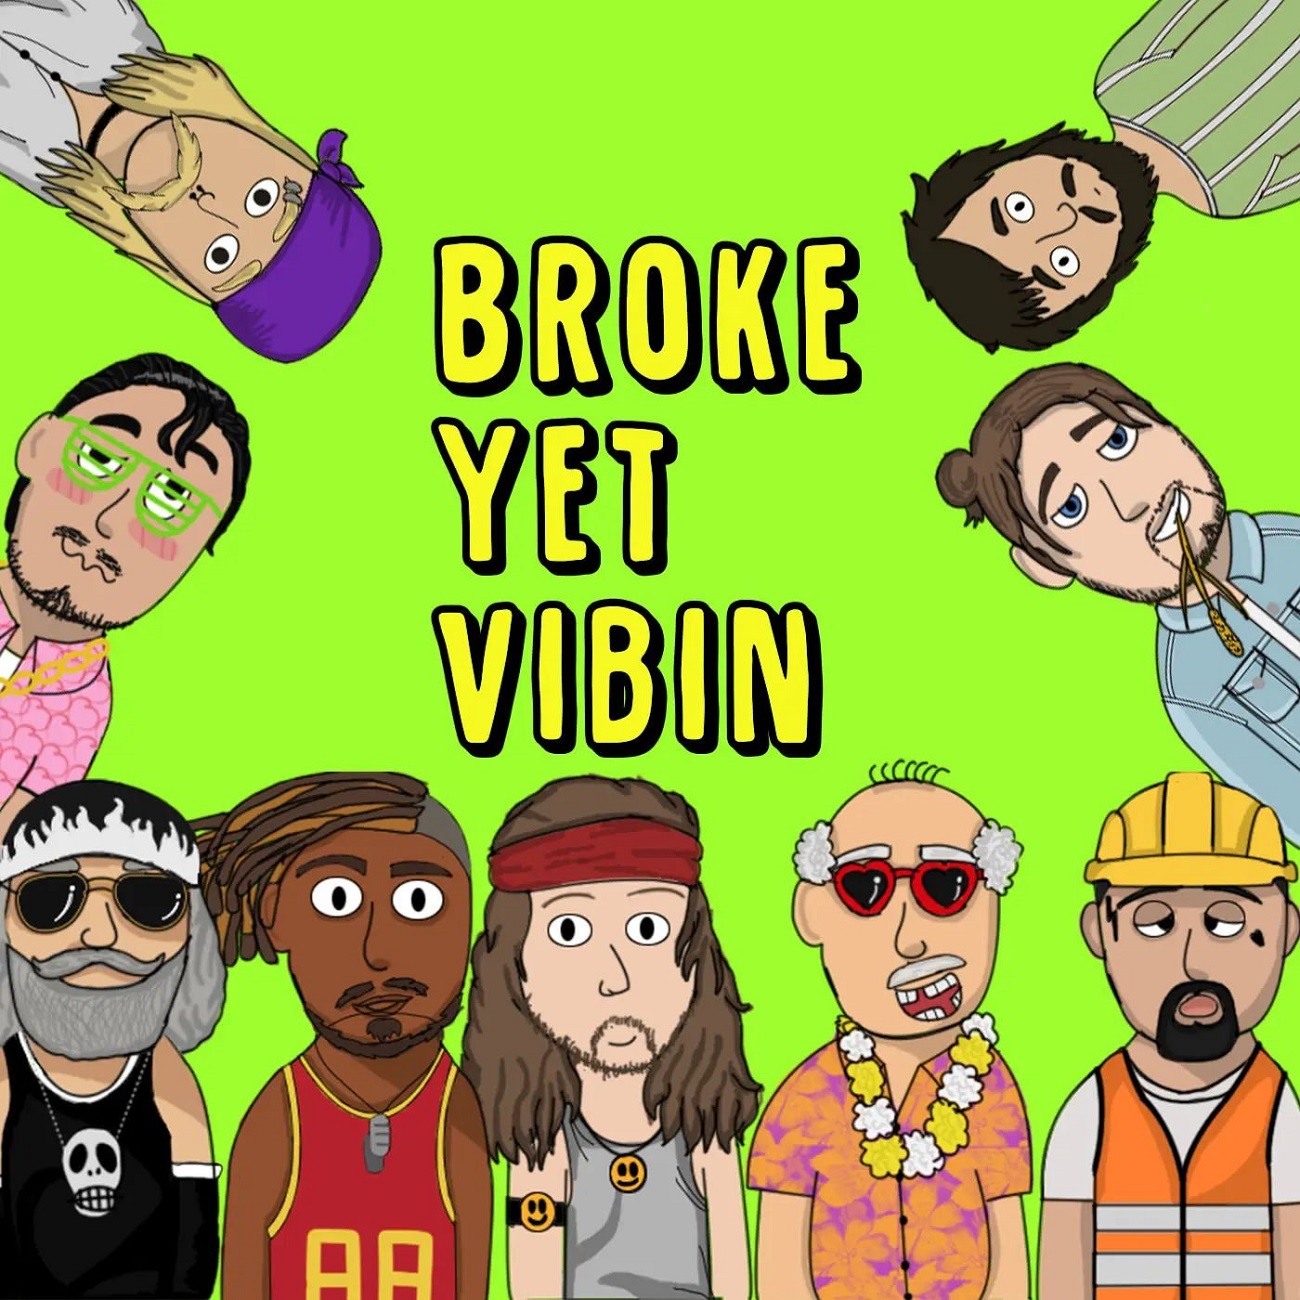 'Broke Yet Vibin' NFT artwork listed at OpenSea NFT platform